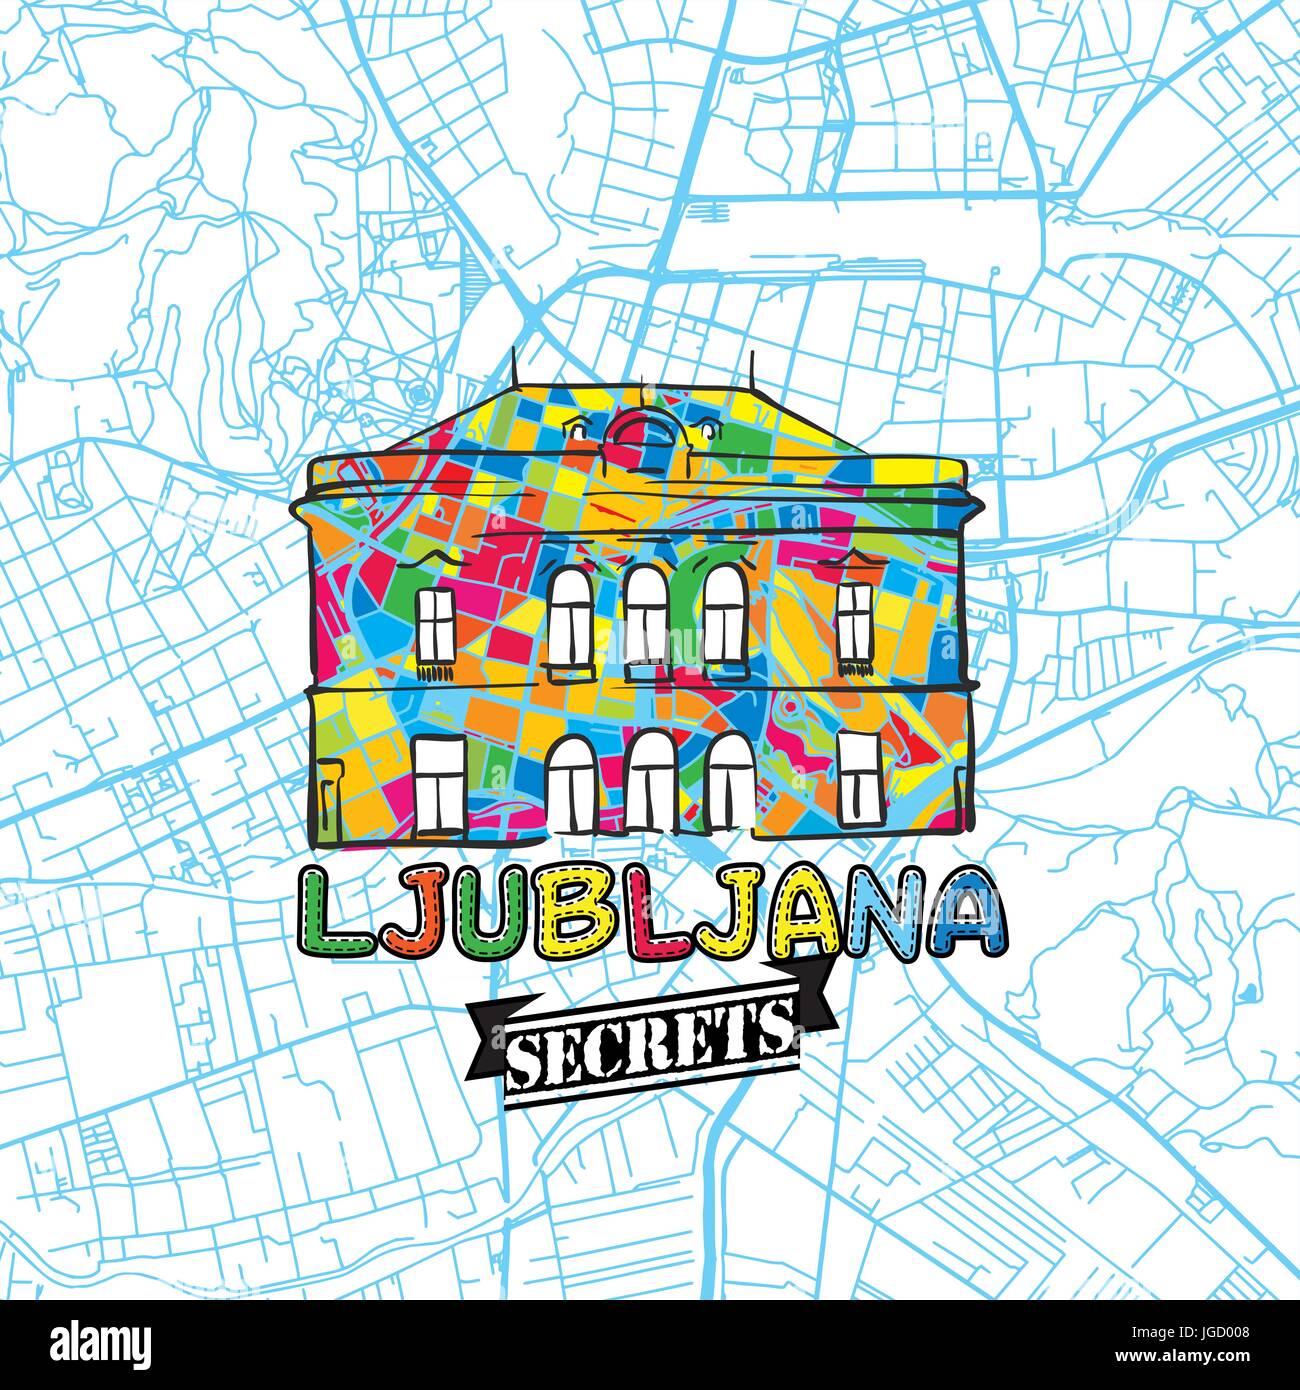 Voyage Ljubljana Art Secrets Site pour la cartographie des experts et des guides de voyage. Le logo de la ville à la main, typo de badge et dessinés à la main sur le dessus de l'image vectorielle sont regroupés Illustration de Vecteur